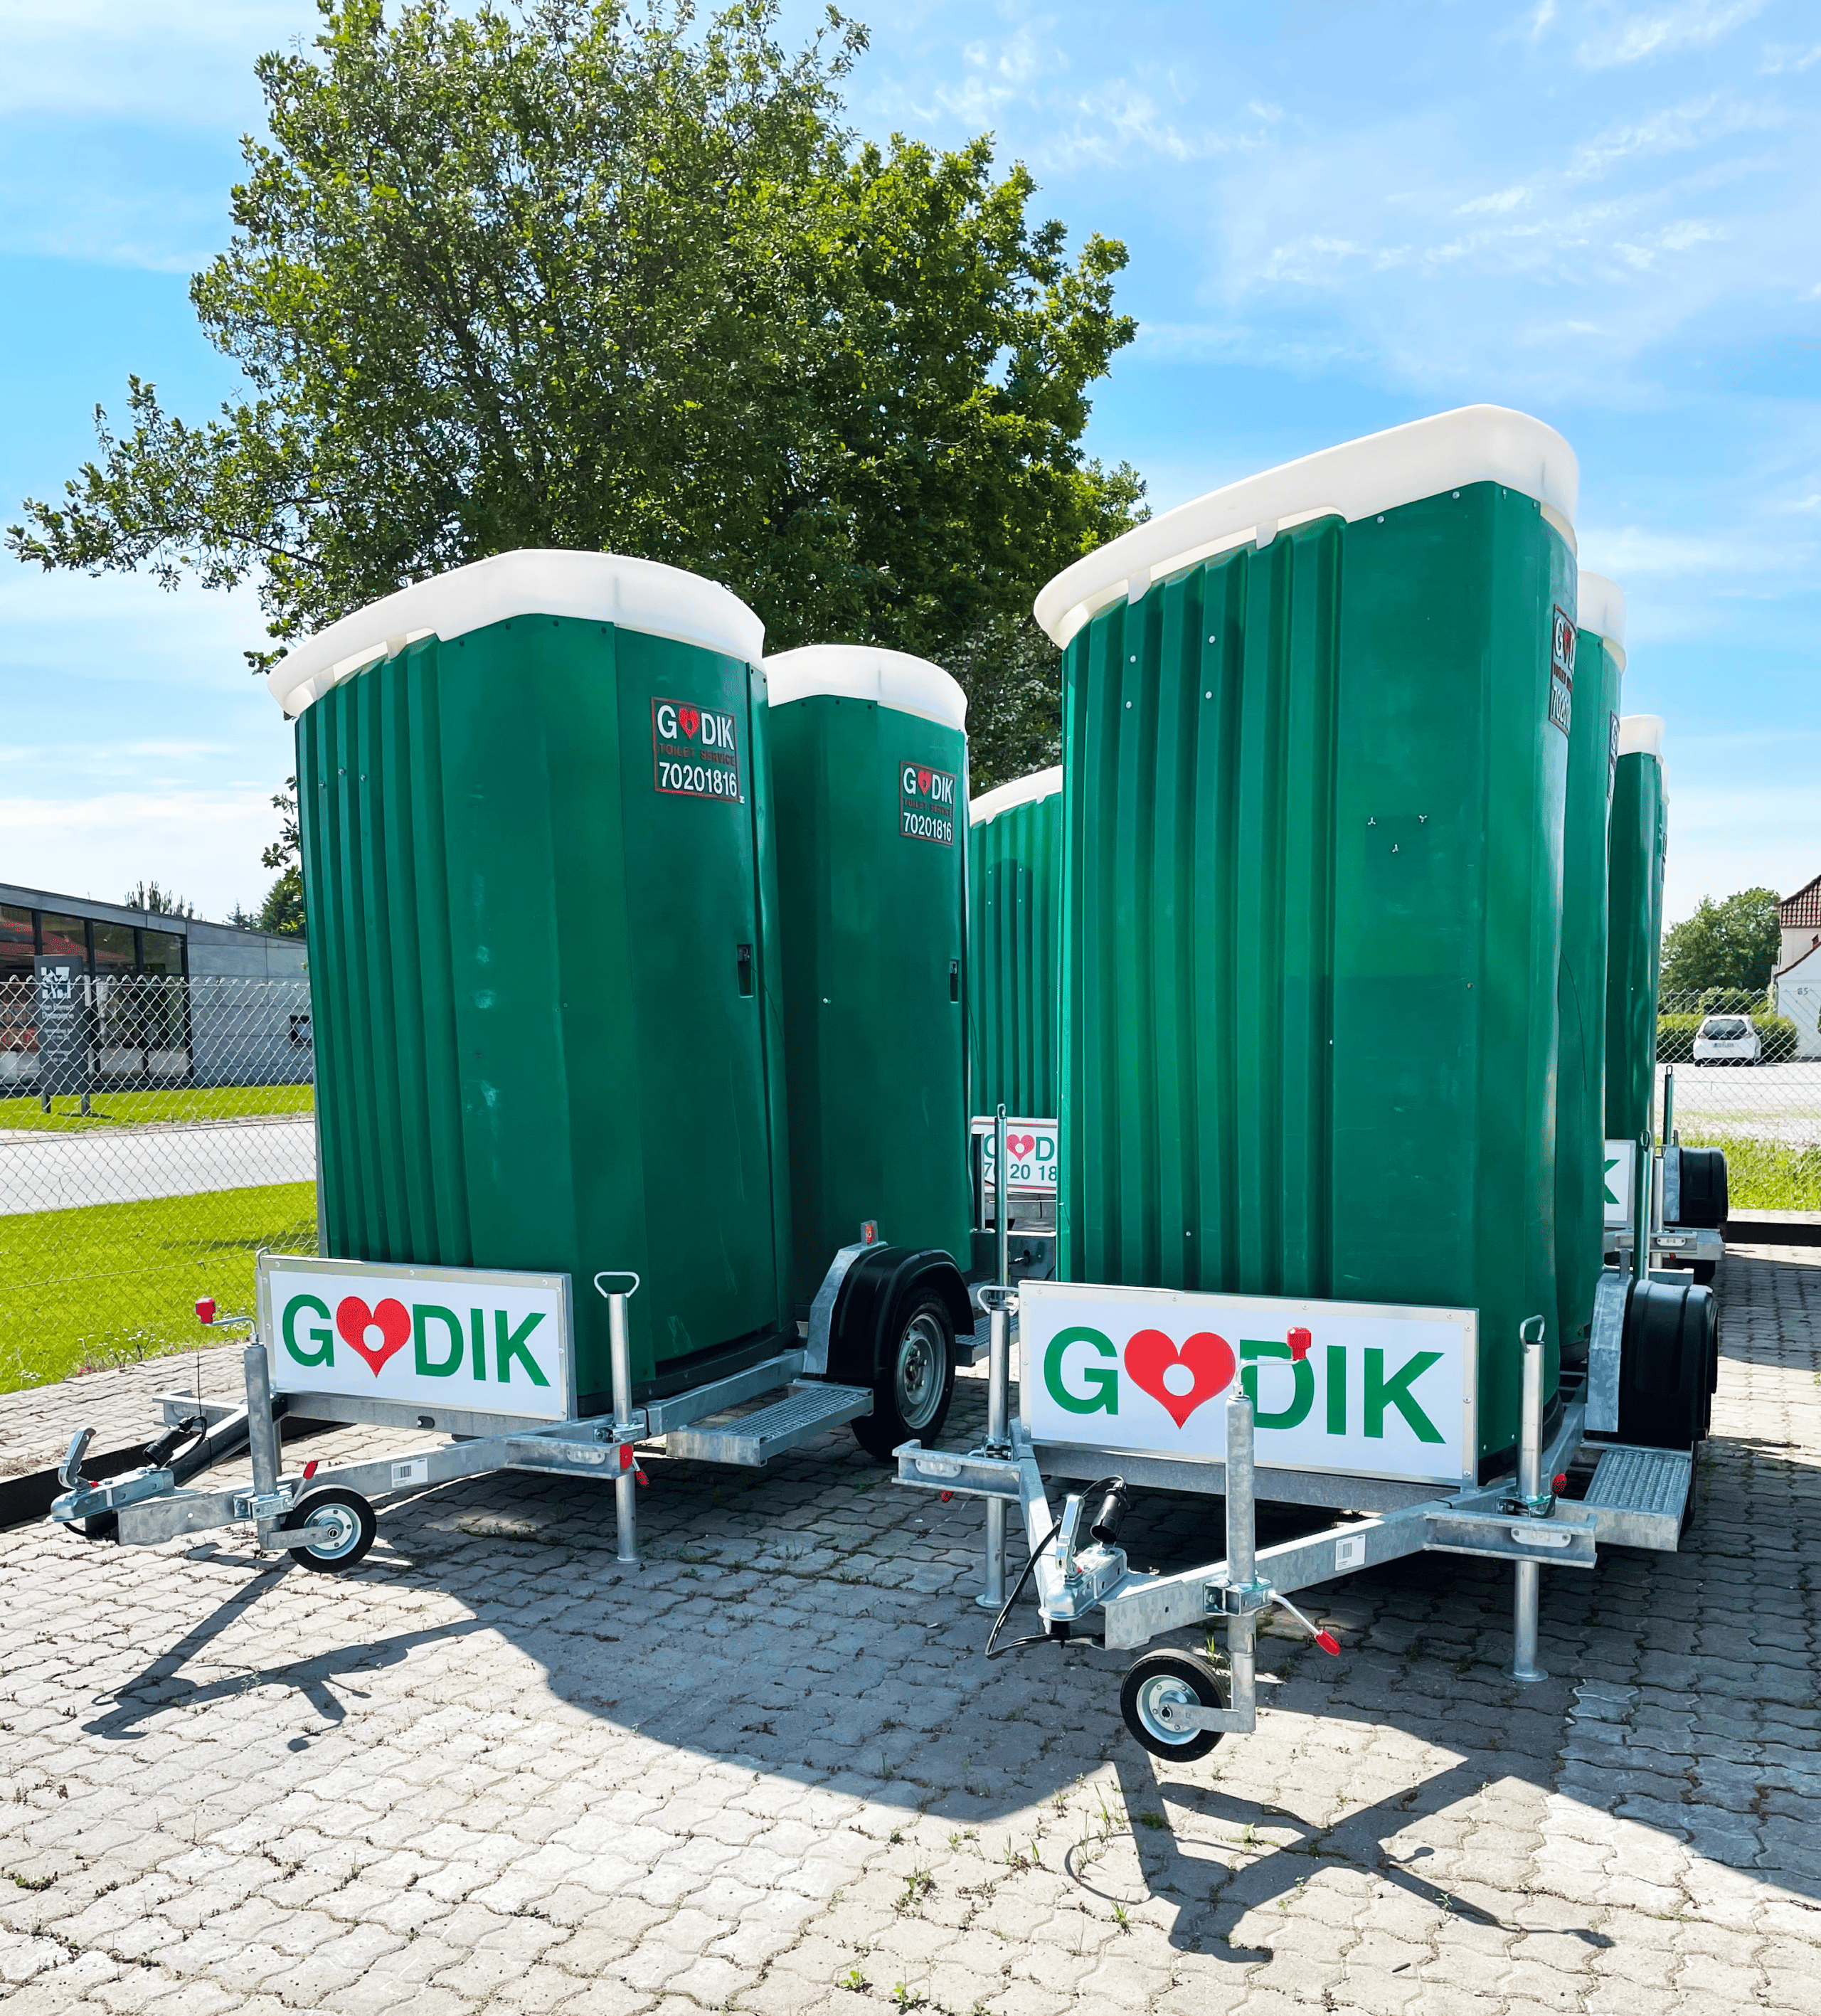 timeren røre ved Generelt sagt Lej toiletvogne til fest | Danmarks billigste mobil toilet - Godik.dk